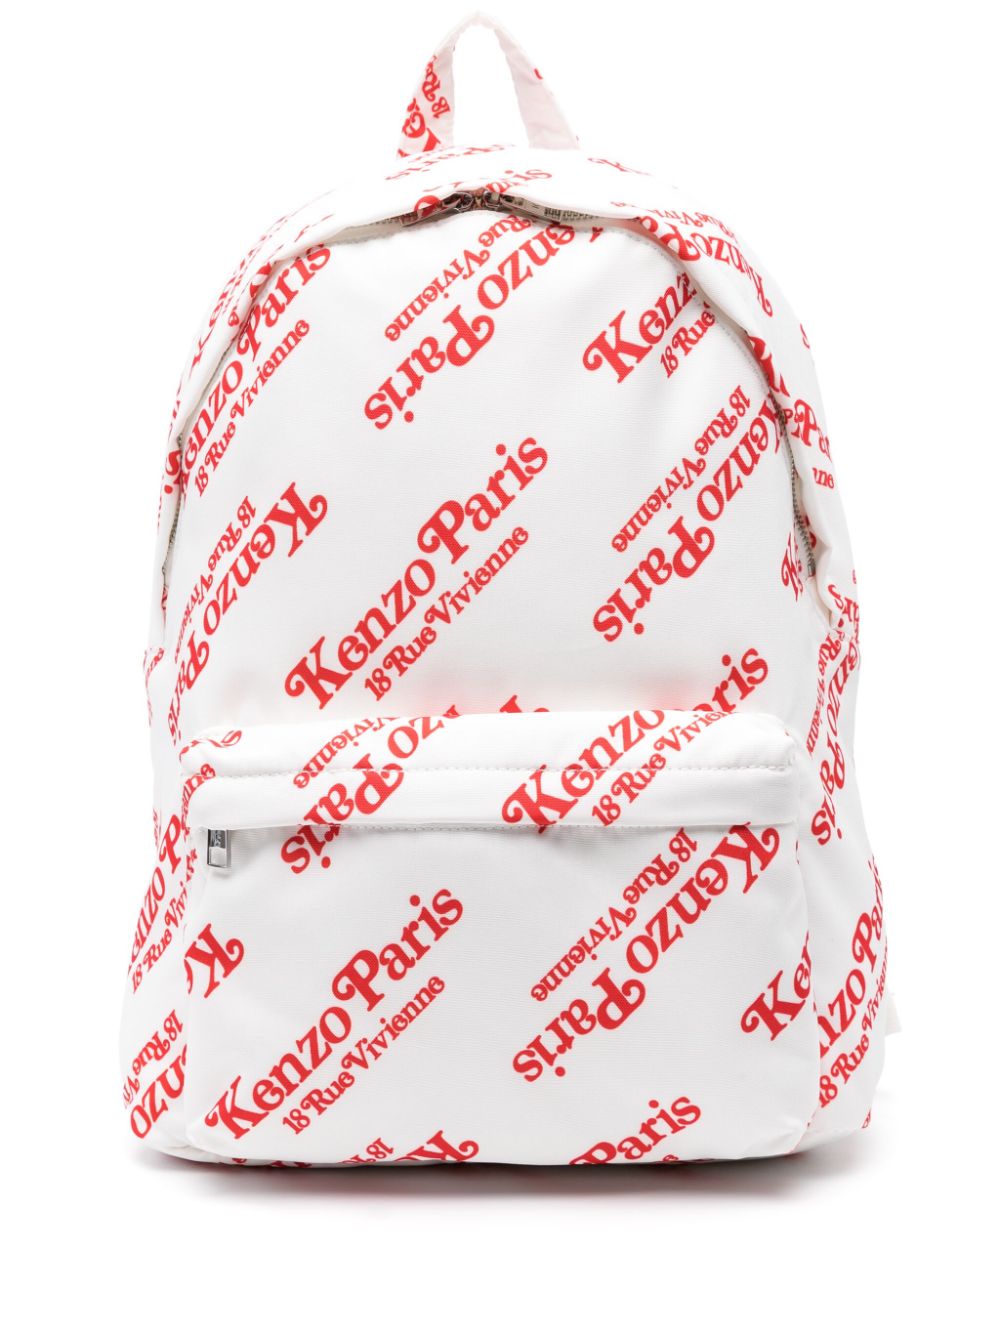 Kenzogram canvas backpack<BR/><BR/><BR/>